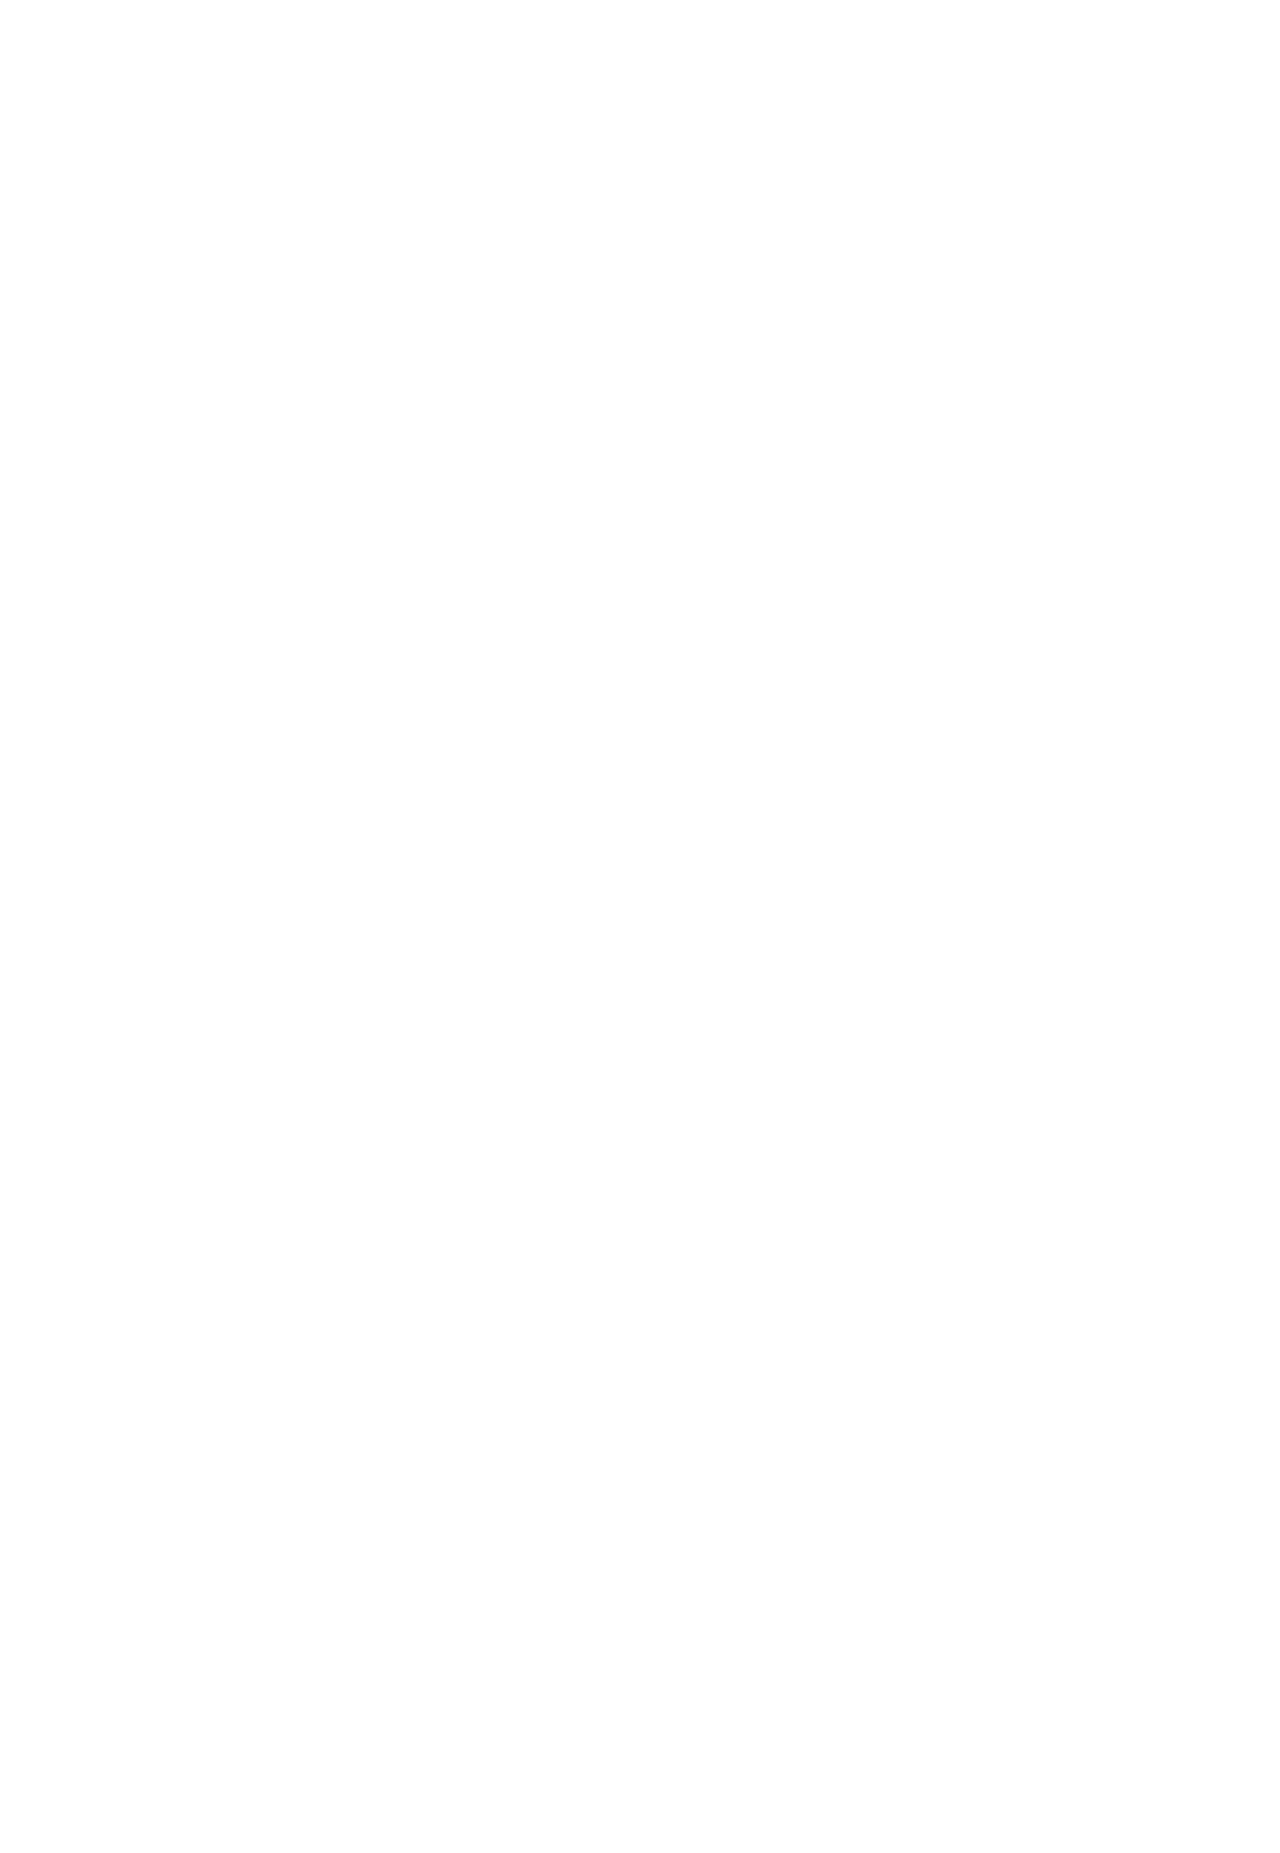 [レズ萌え! (猫沢鯉鯛、お湯の香り)] ギアスR3!? 超マイナーキャラ本+フルカラー総集編 (コードギアス 反逆のルルーシュ) [DL版]